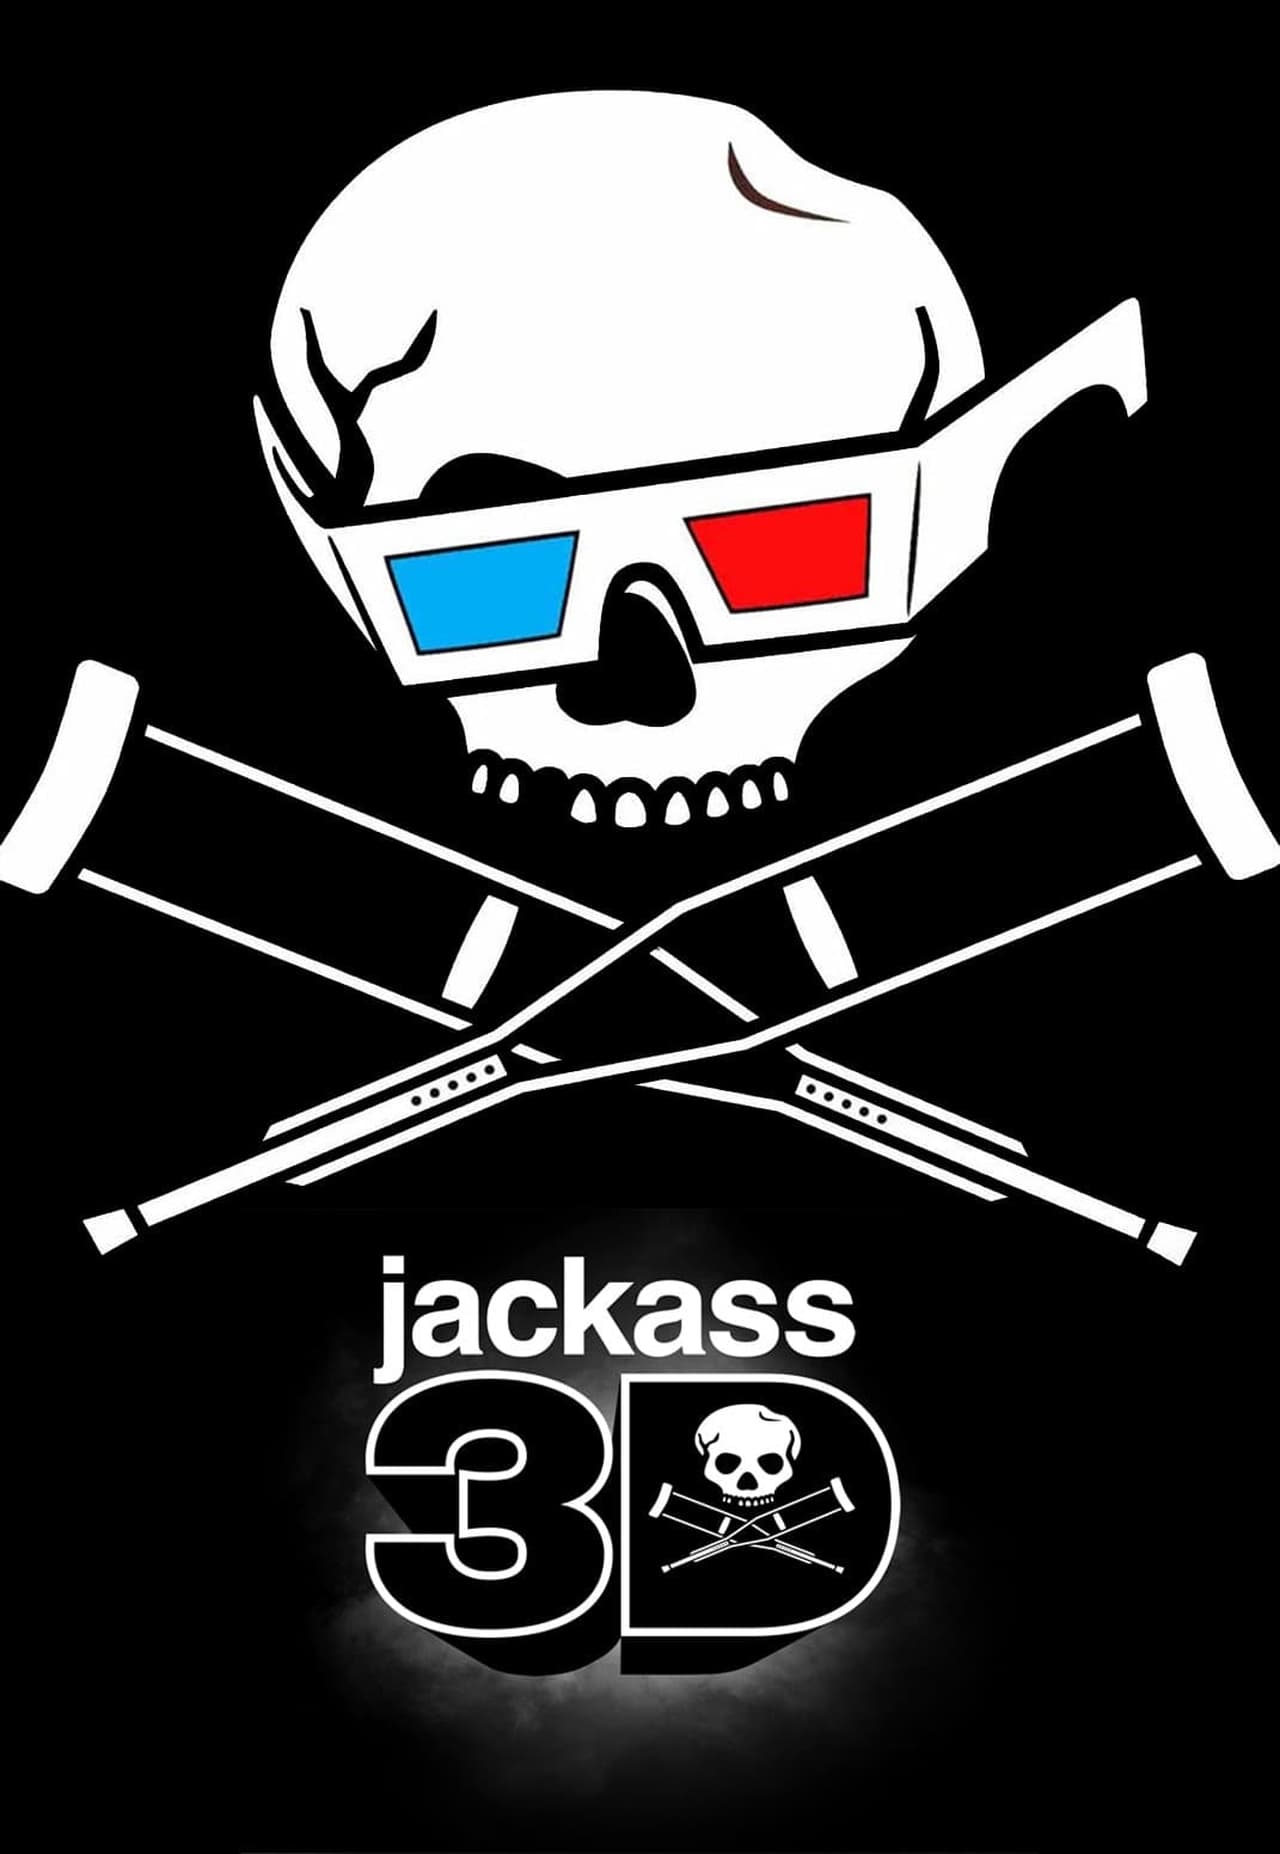 Jackass 3D (2010) 640Kbps 23.976Fps 48Khz 5.1Ch BluRay Turkish Audio TAC